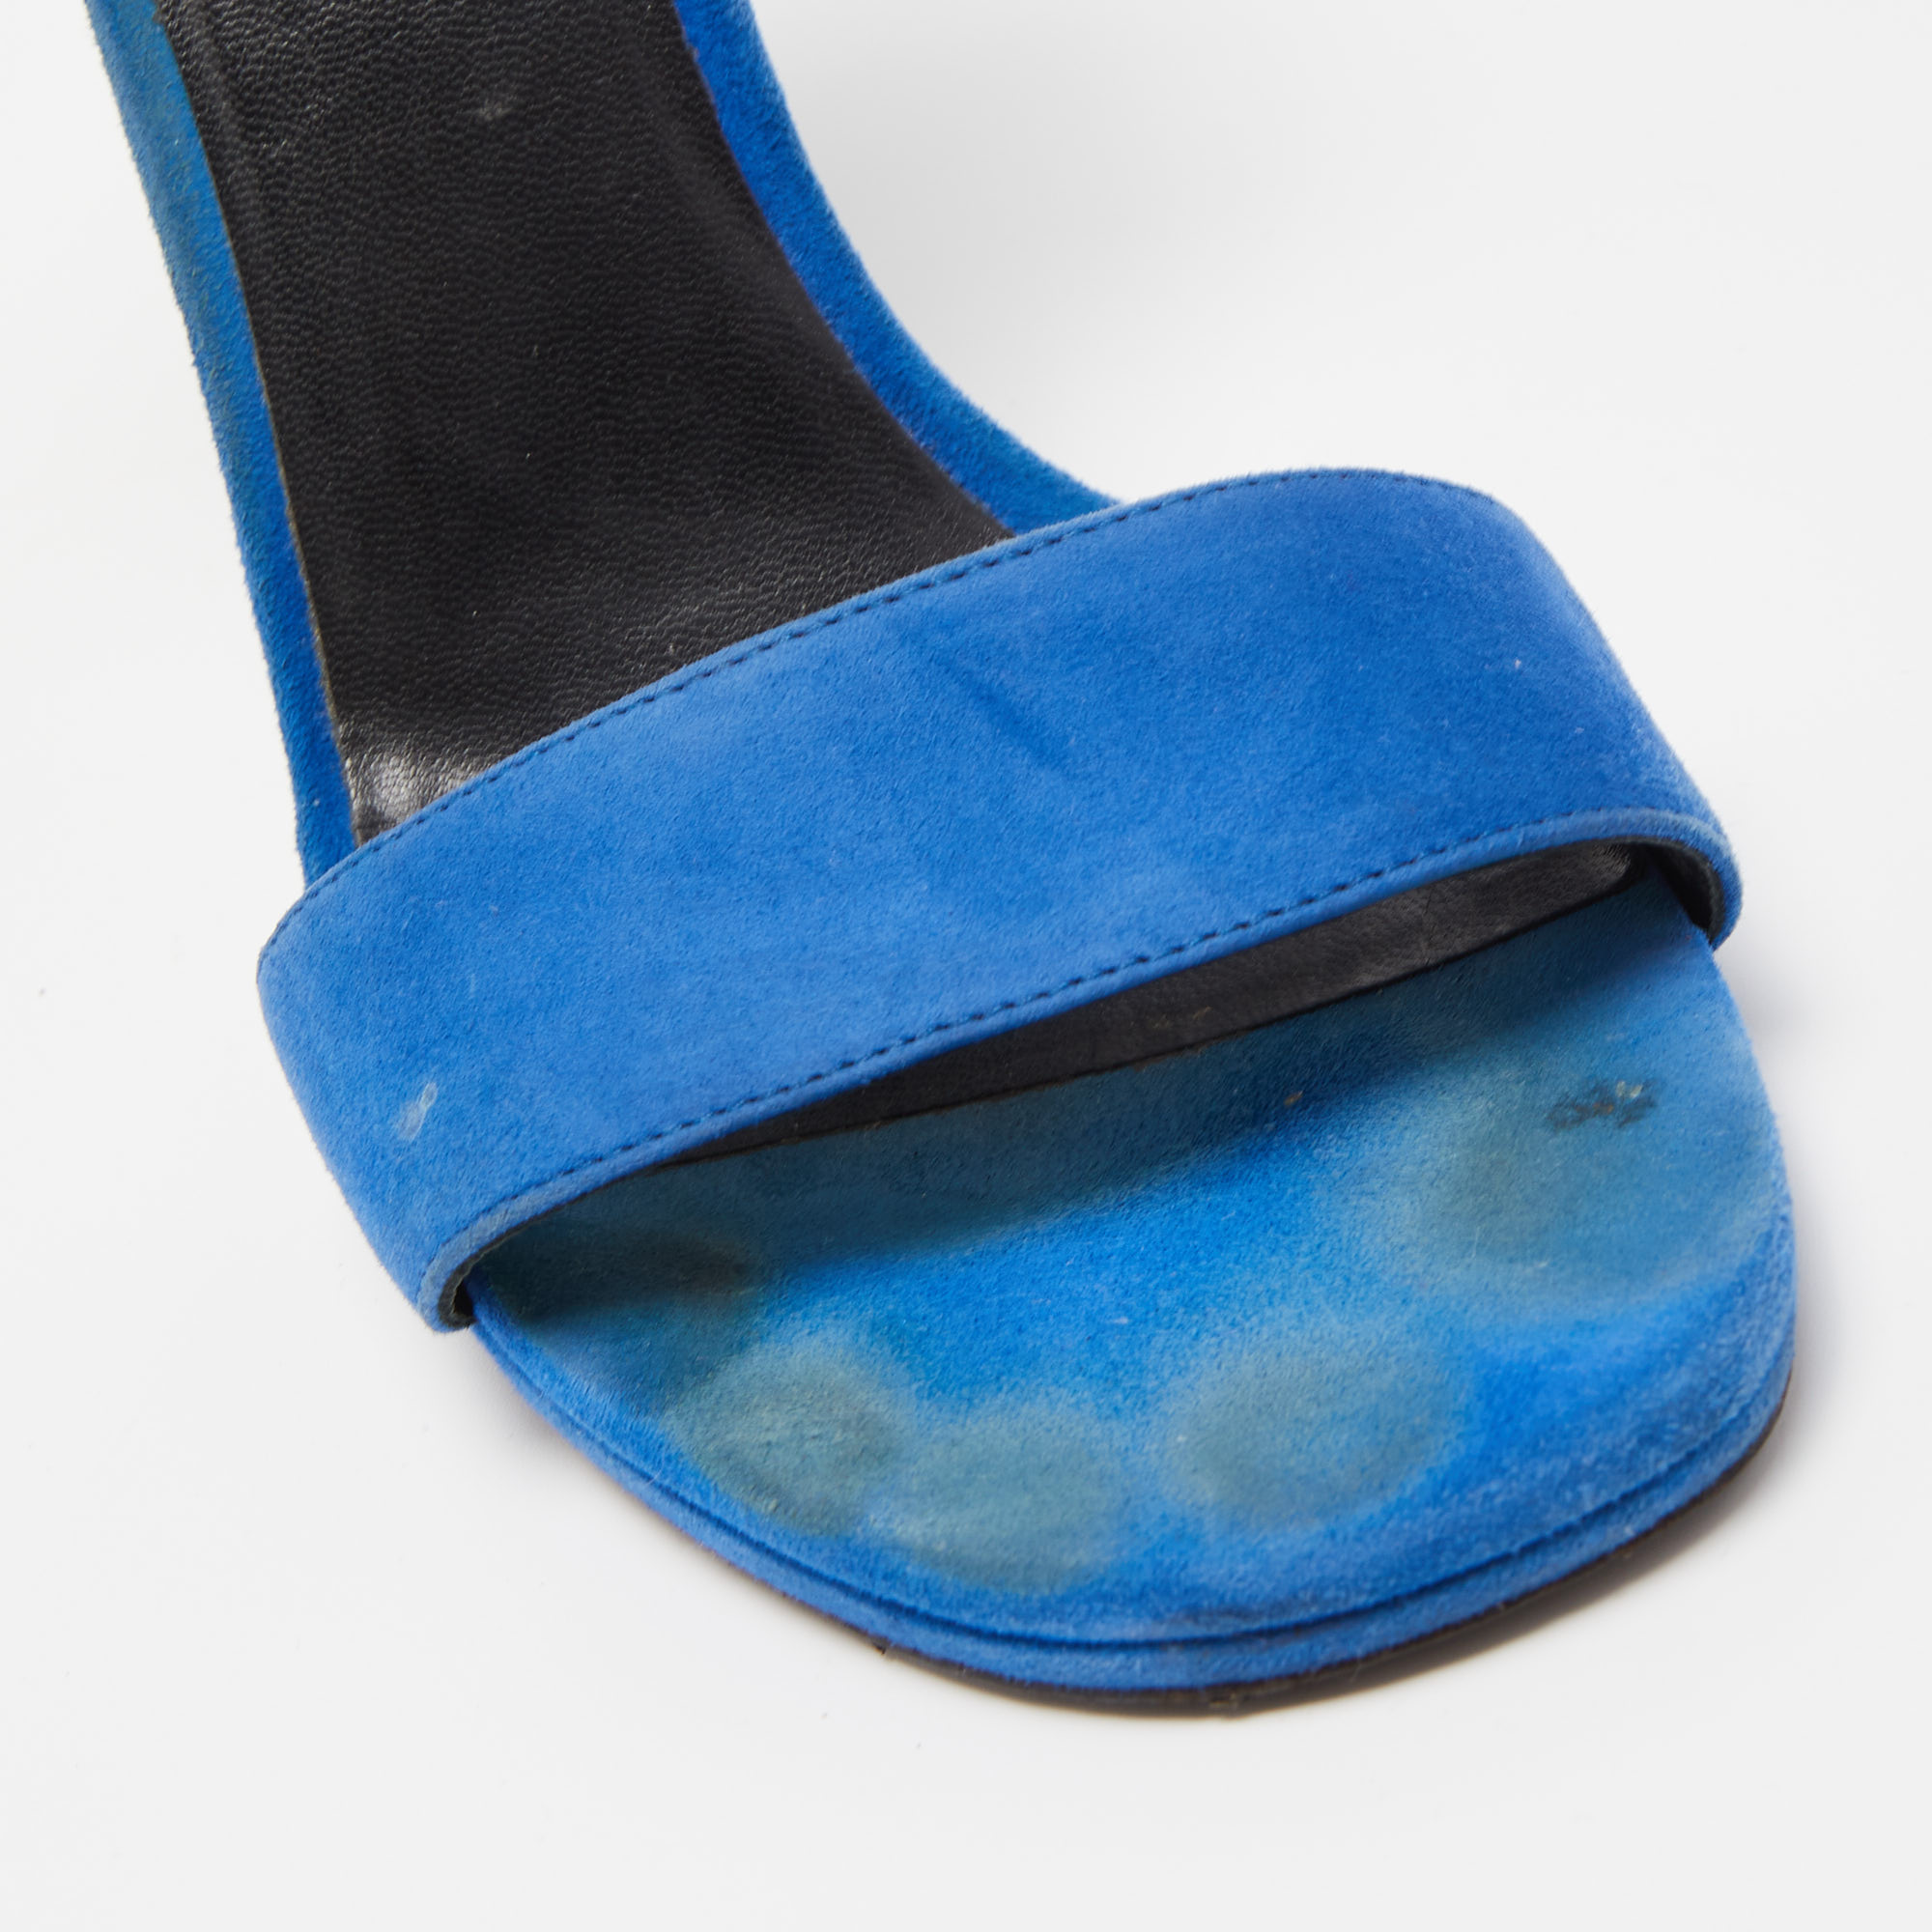 Saint Laurent Blue Suede Jane Sandals Size 38.5